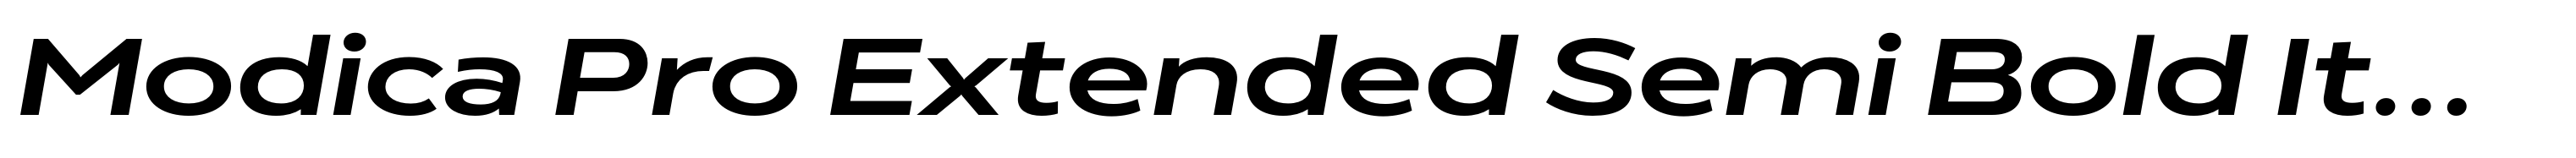 Modica Pro Extended Semi Bold Italic